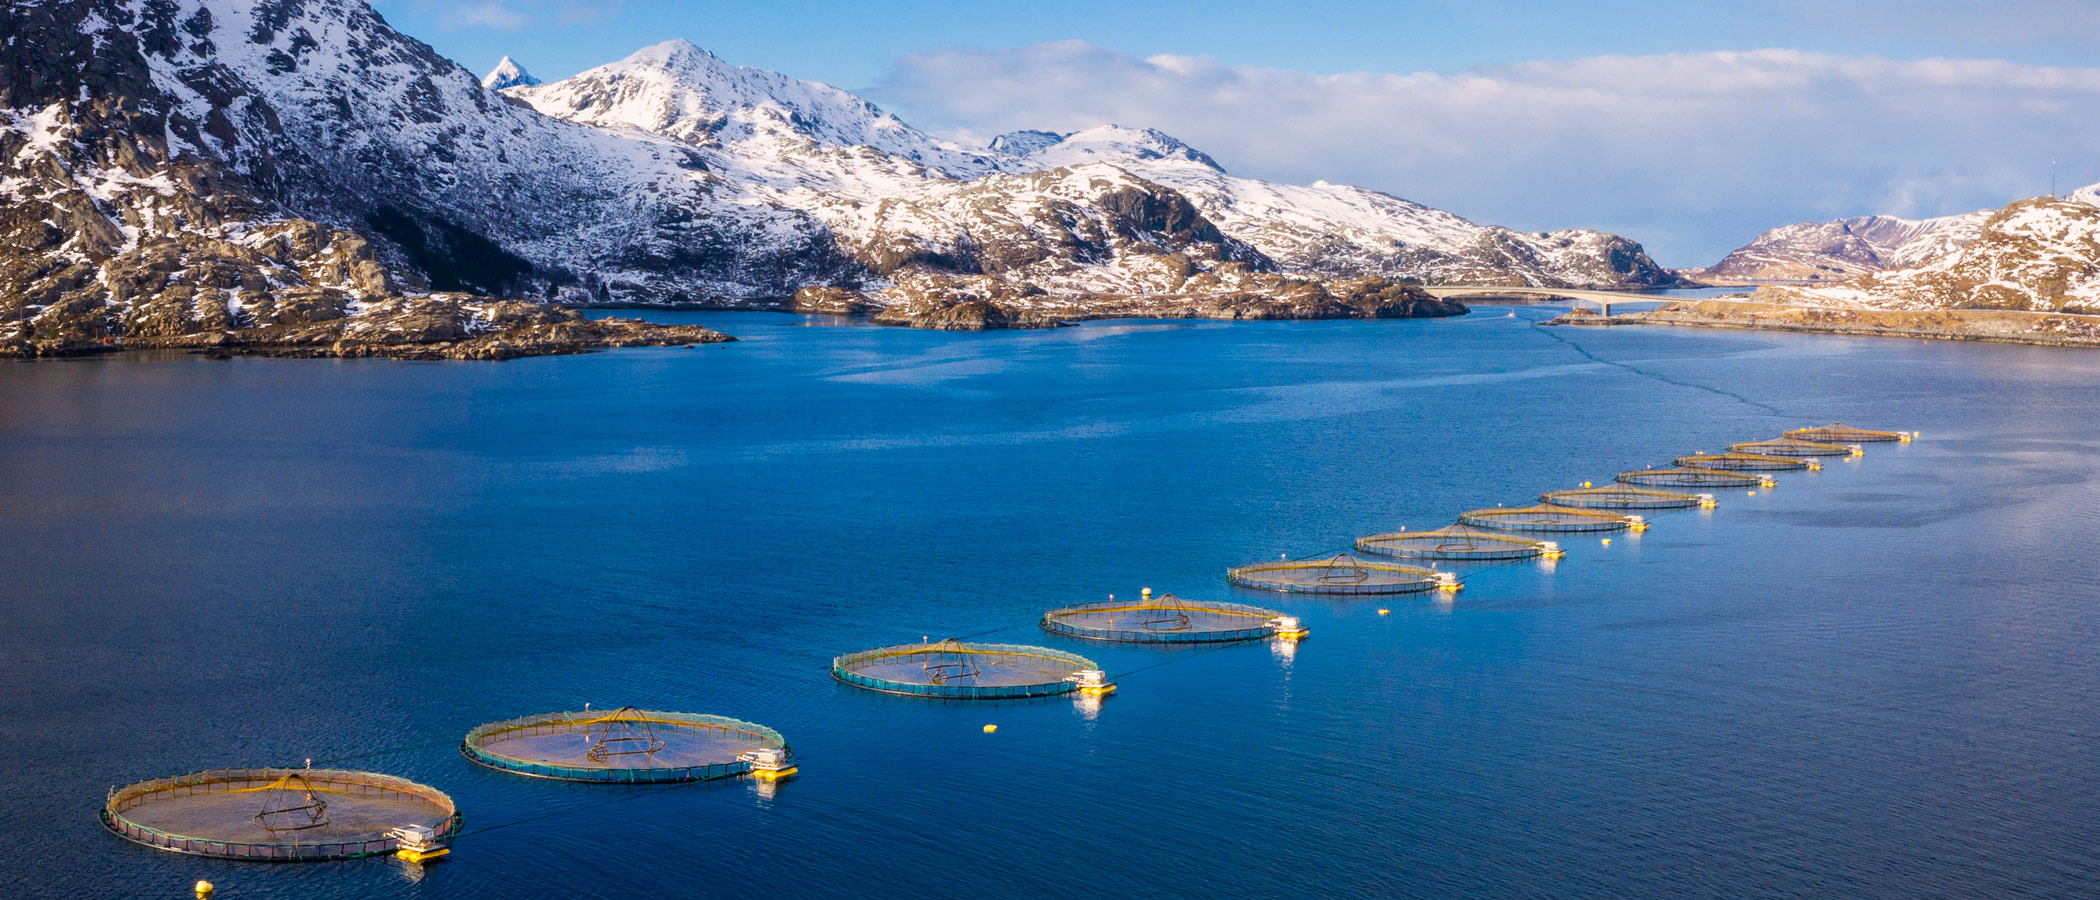 Ocean farms in body of water